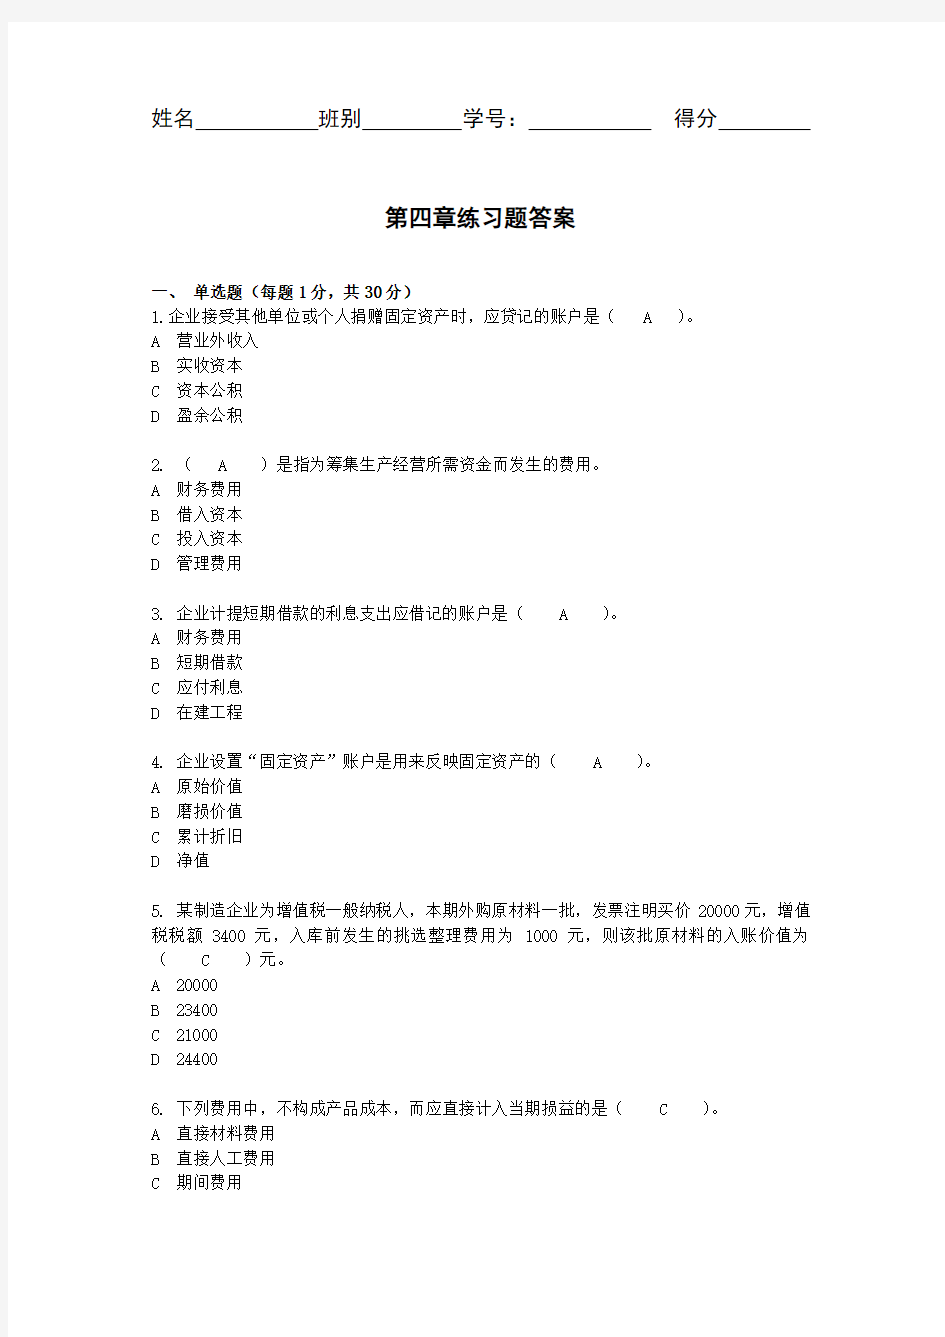 会计-第四章练习题答案-会计学基础-第四版-中国人民大学出版社